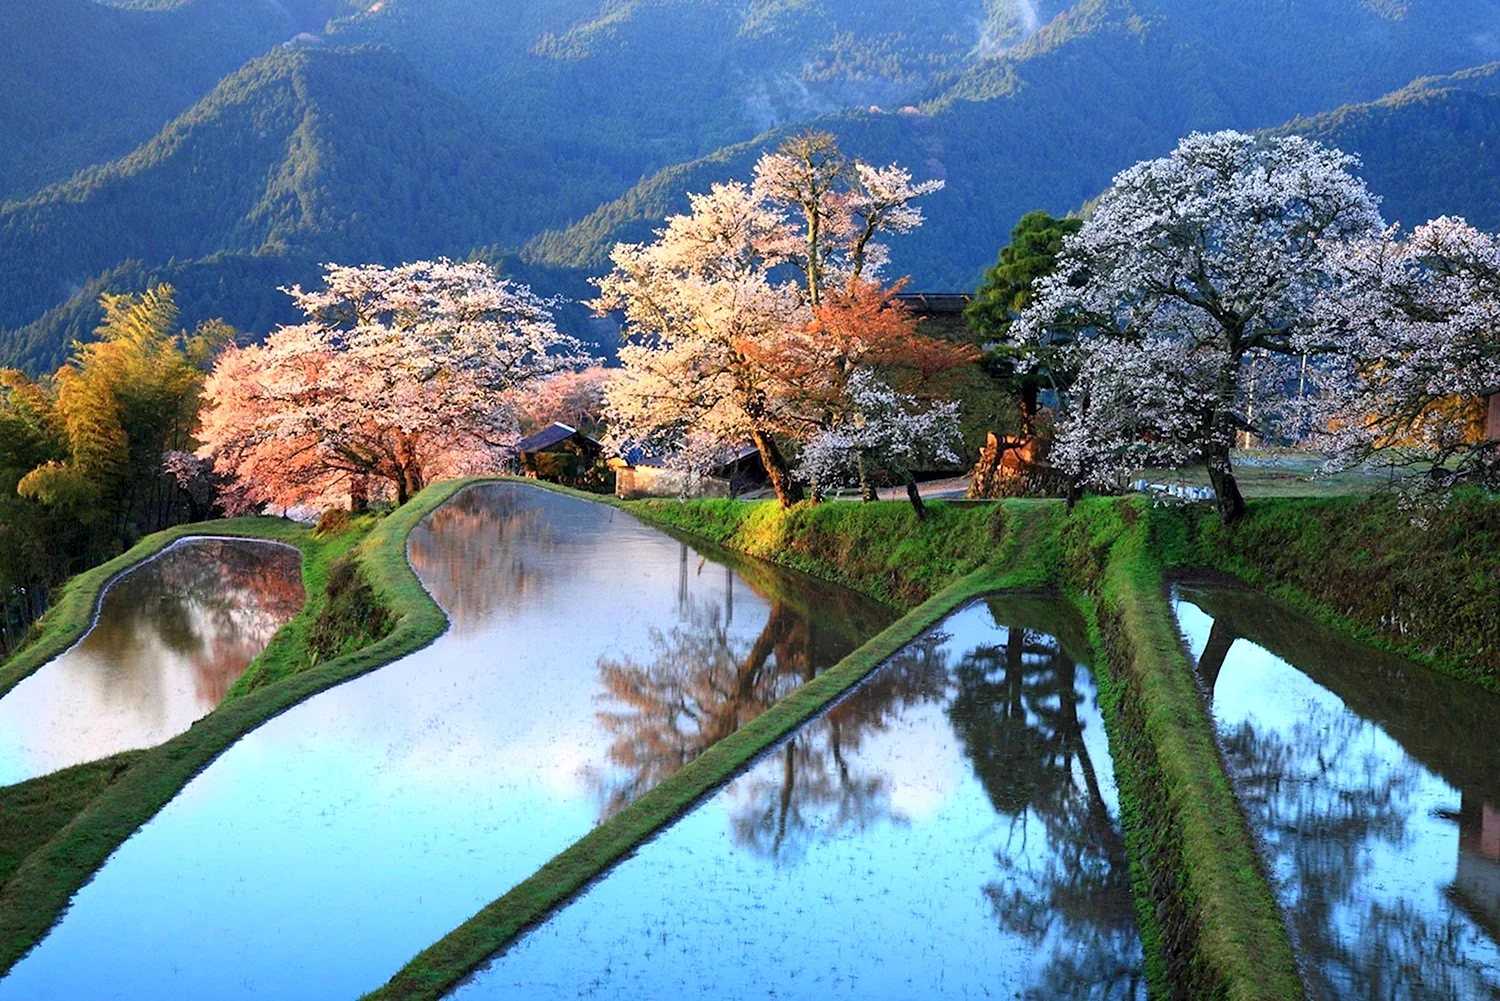 Природа Японии